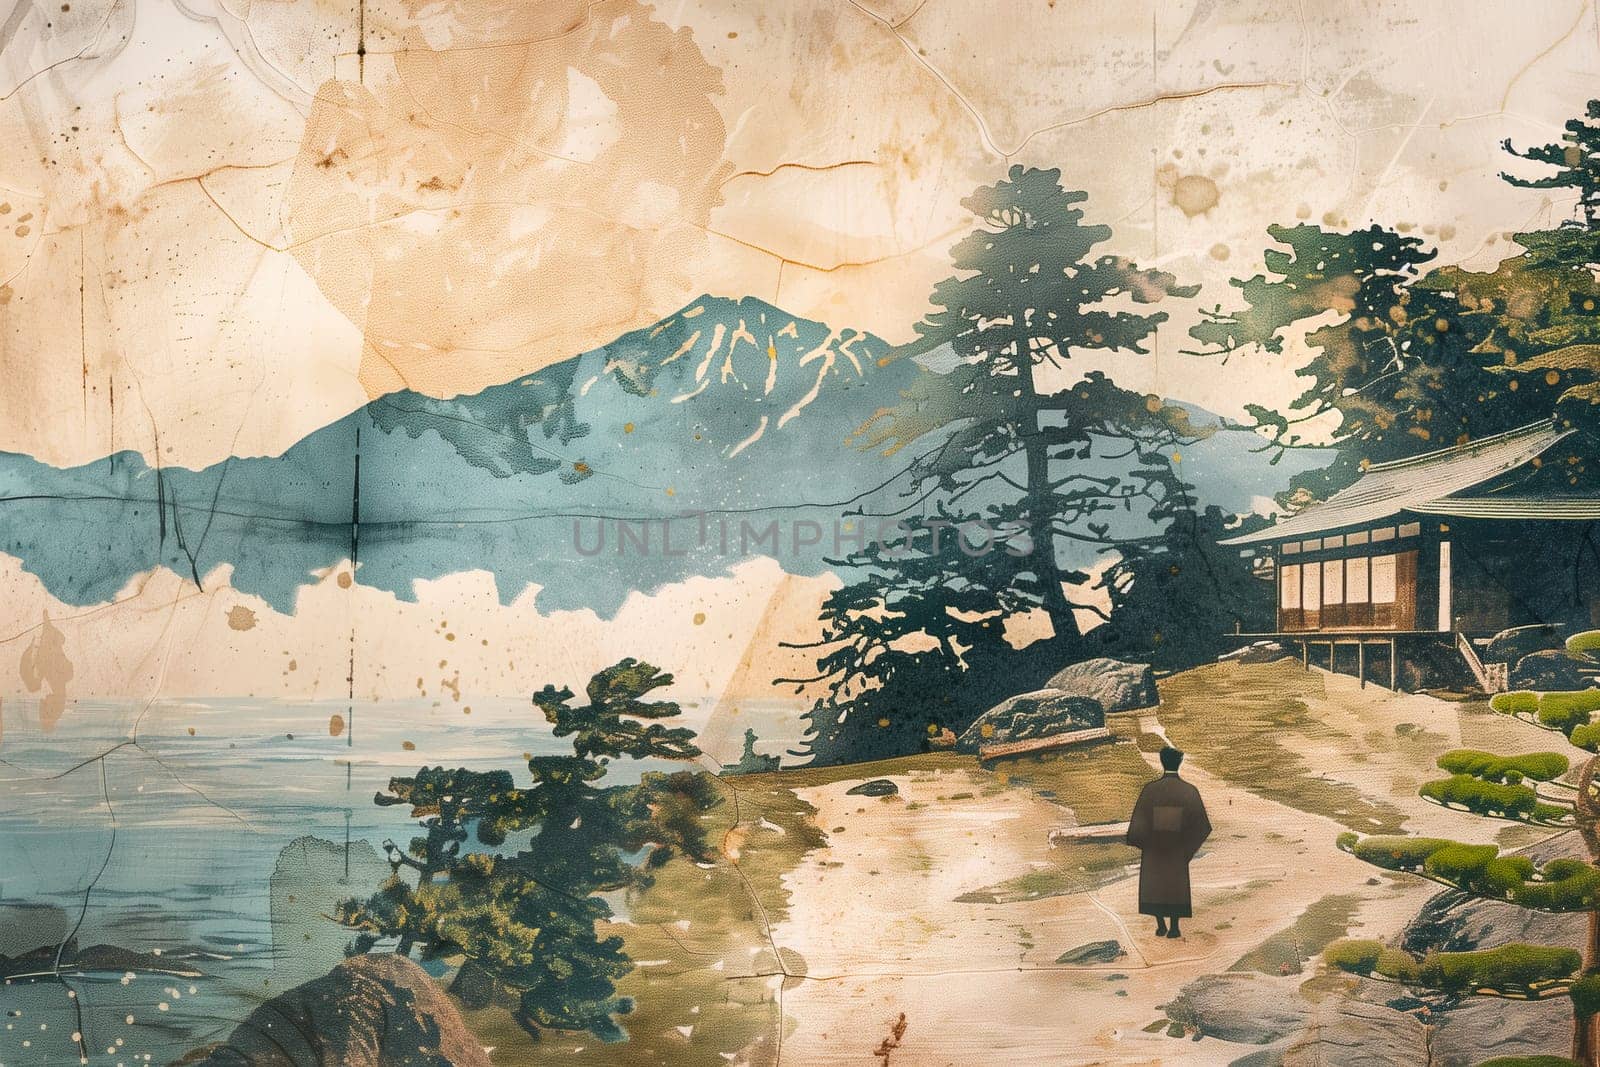 Antique Japanese poster landscape Illustration by Dustick